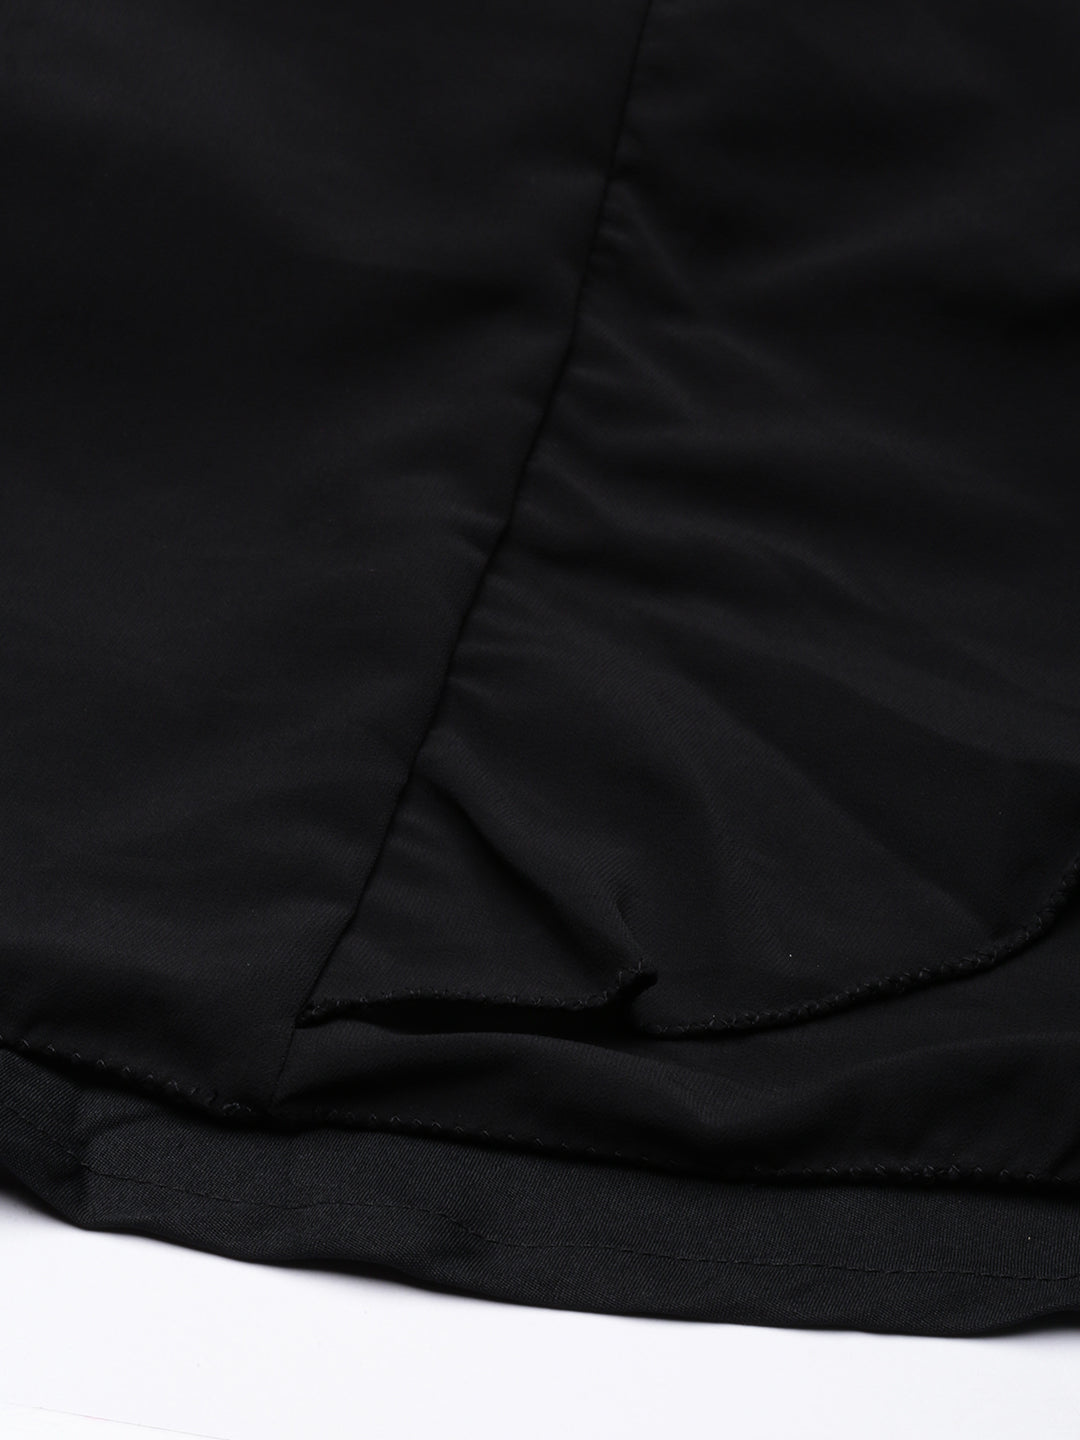 Black-Georgette-Foil-Printed-One-Shoulder-Neck-Skirt-Set